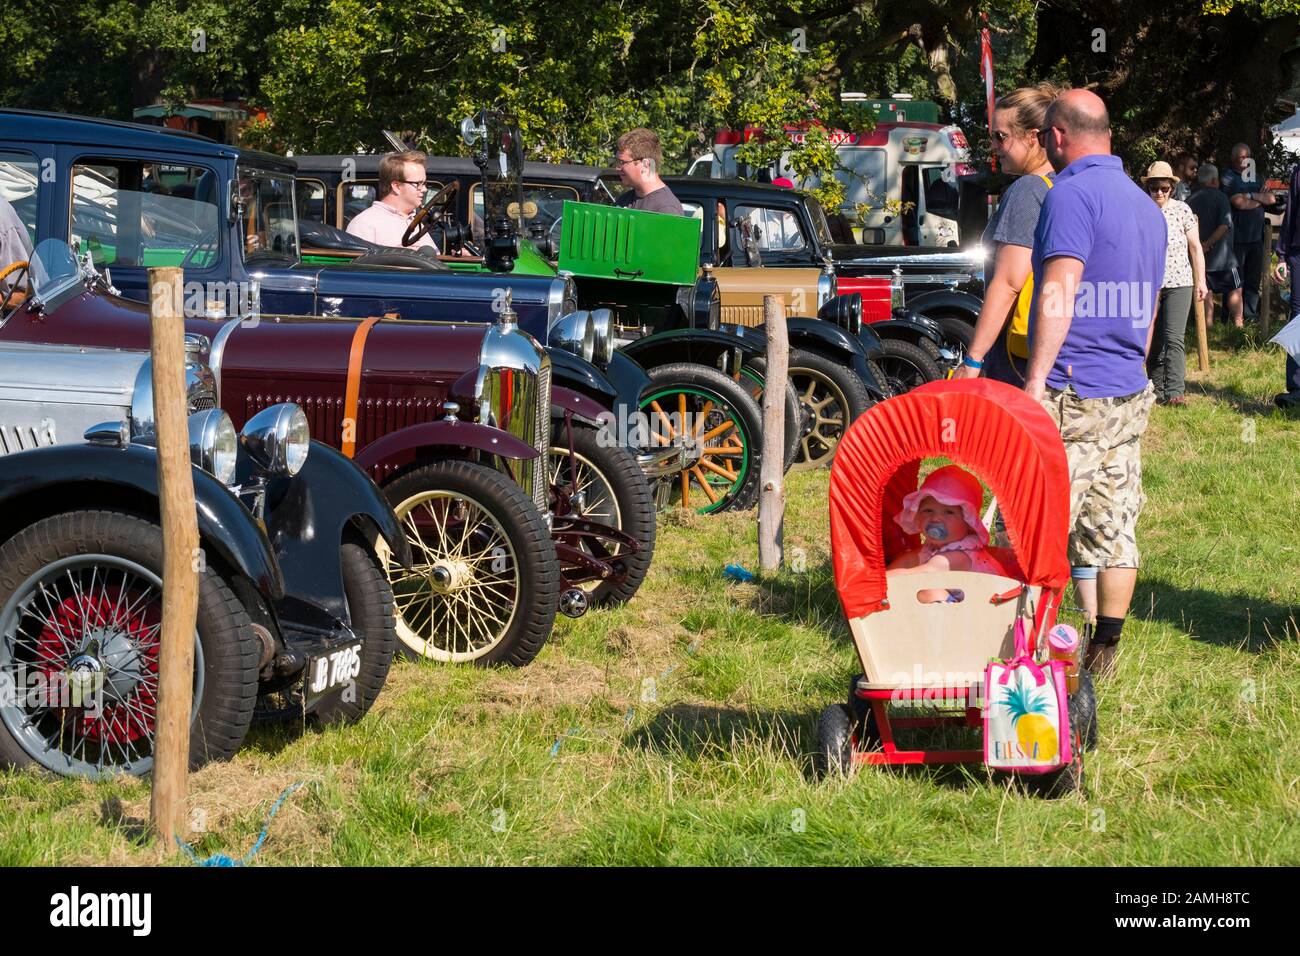 Enfant dans un chariot couvert poussette avec boissons à Shrewsbury 2019 Rallye à vapeur, Shropshire, England, UK Banque D'Images